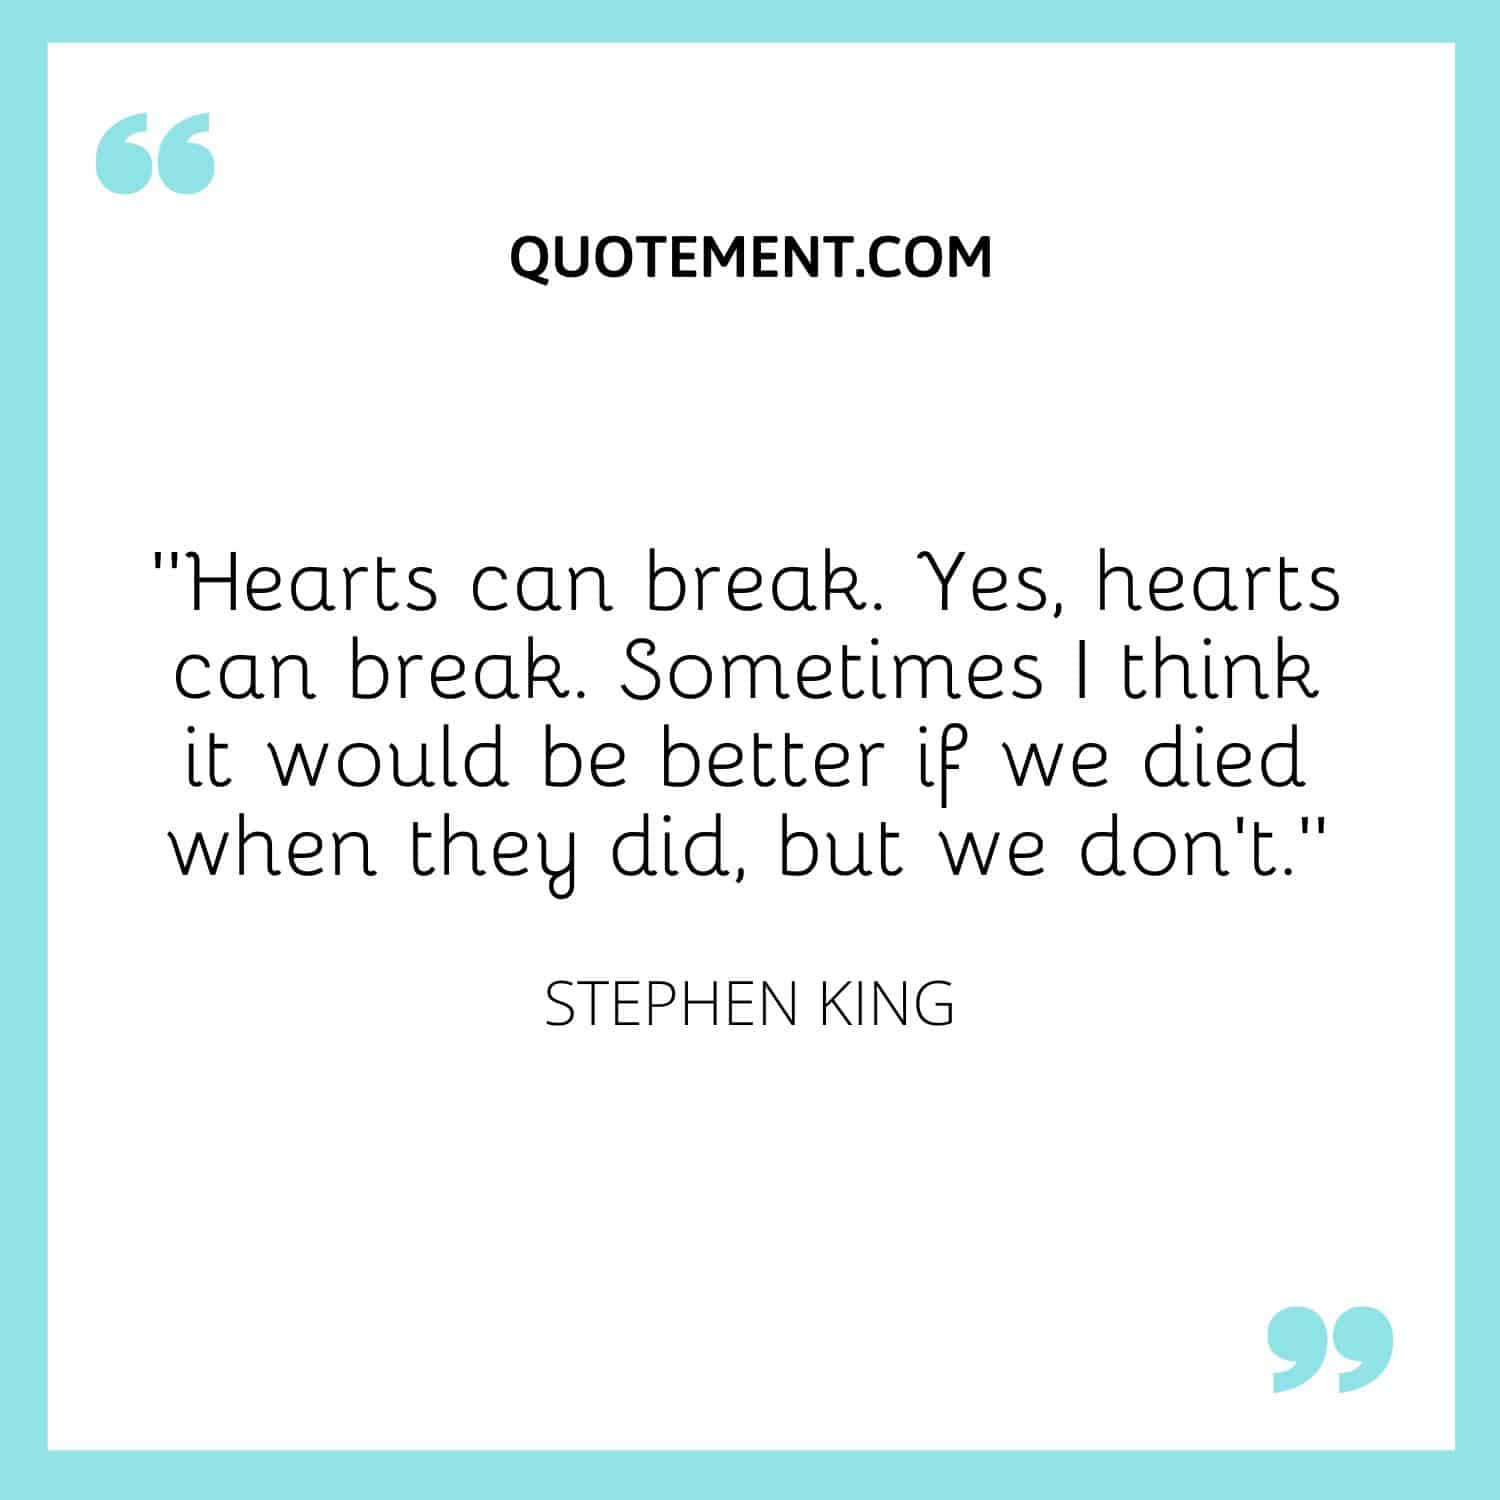 Hearts can break.